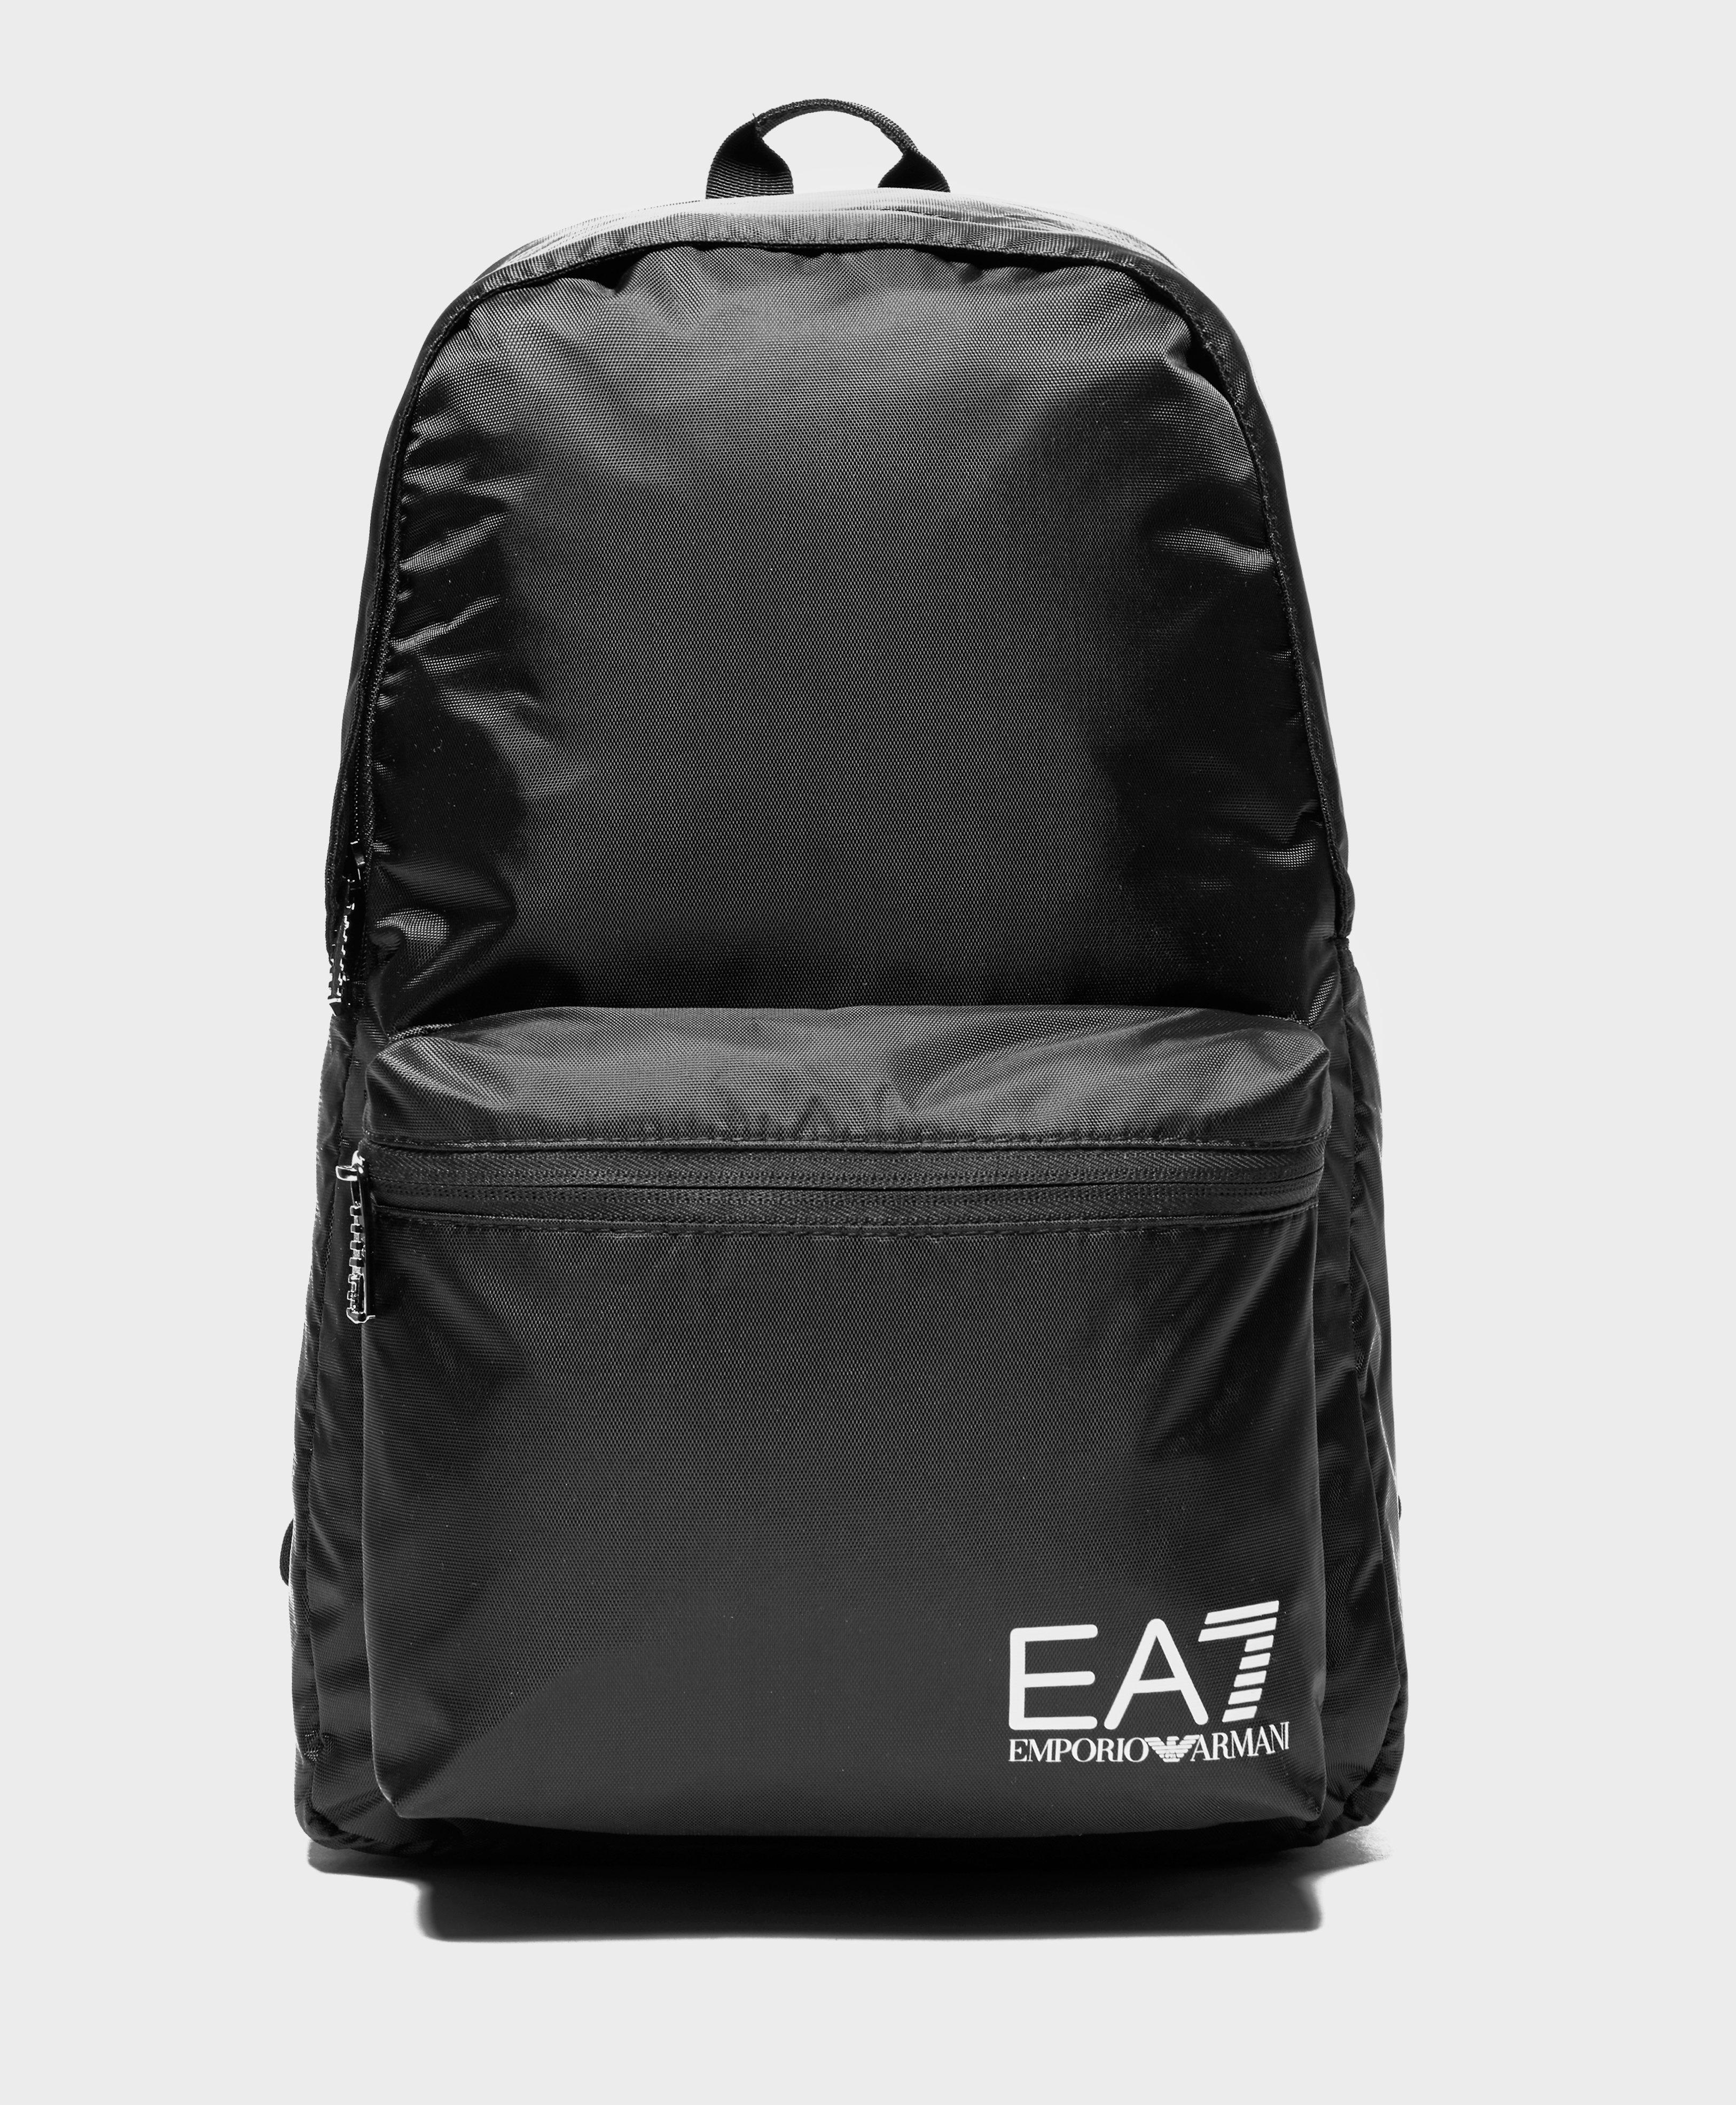 Emporio Armani EA7 Train Core Backpack 